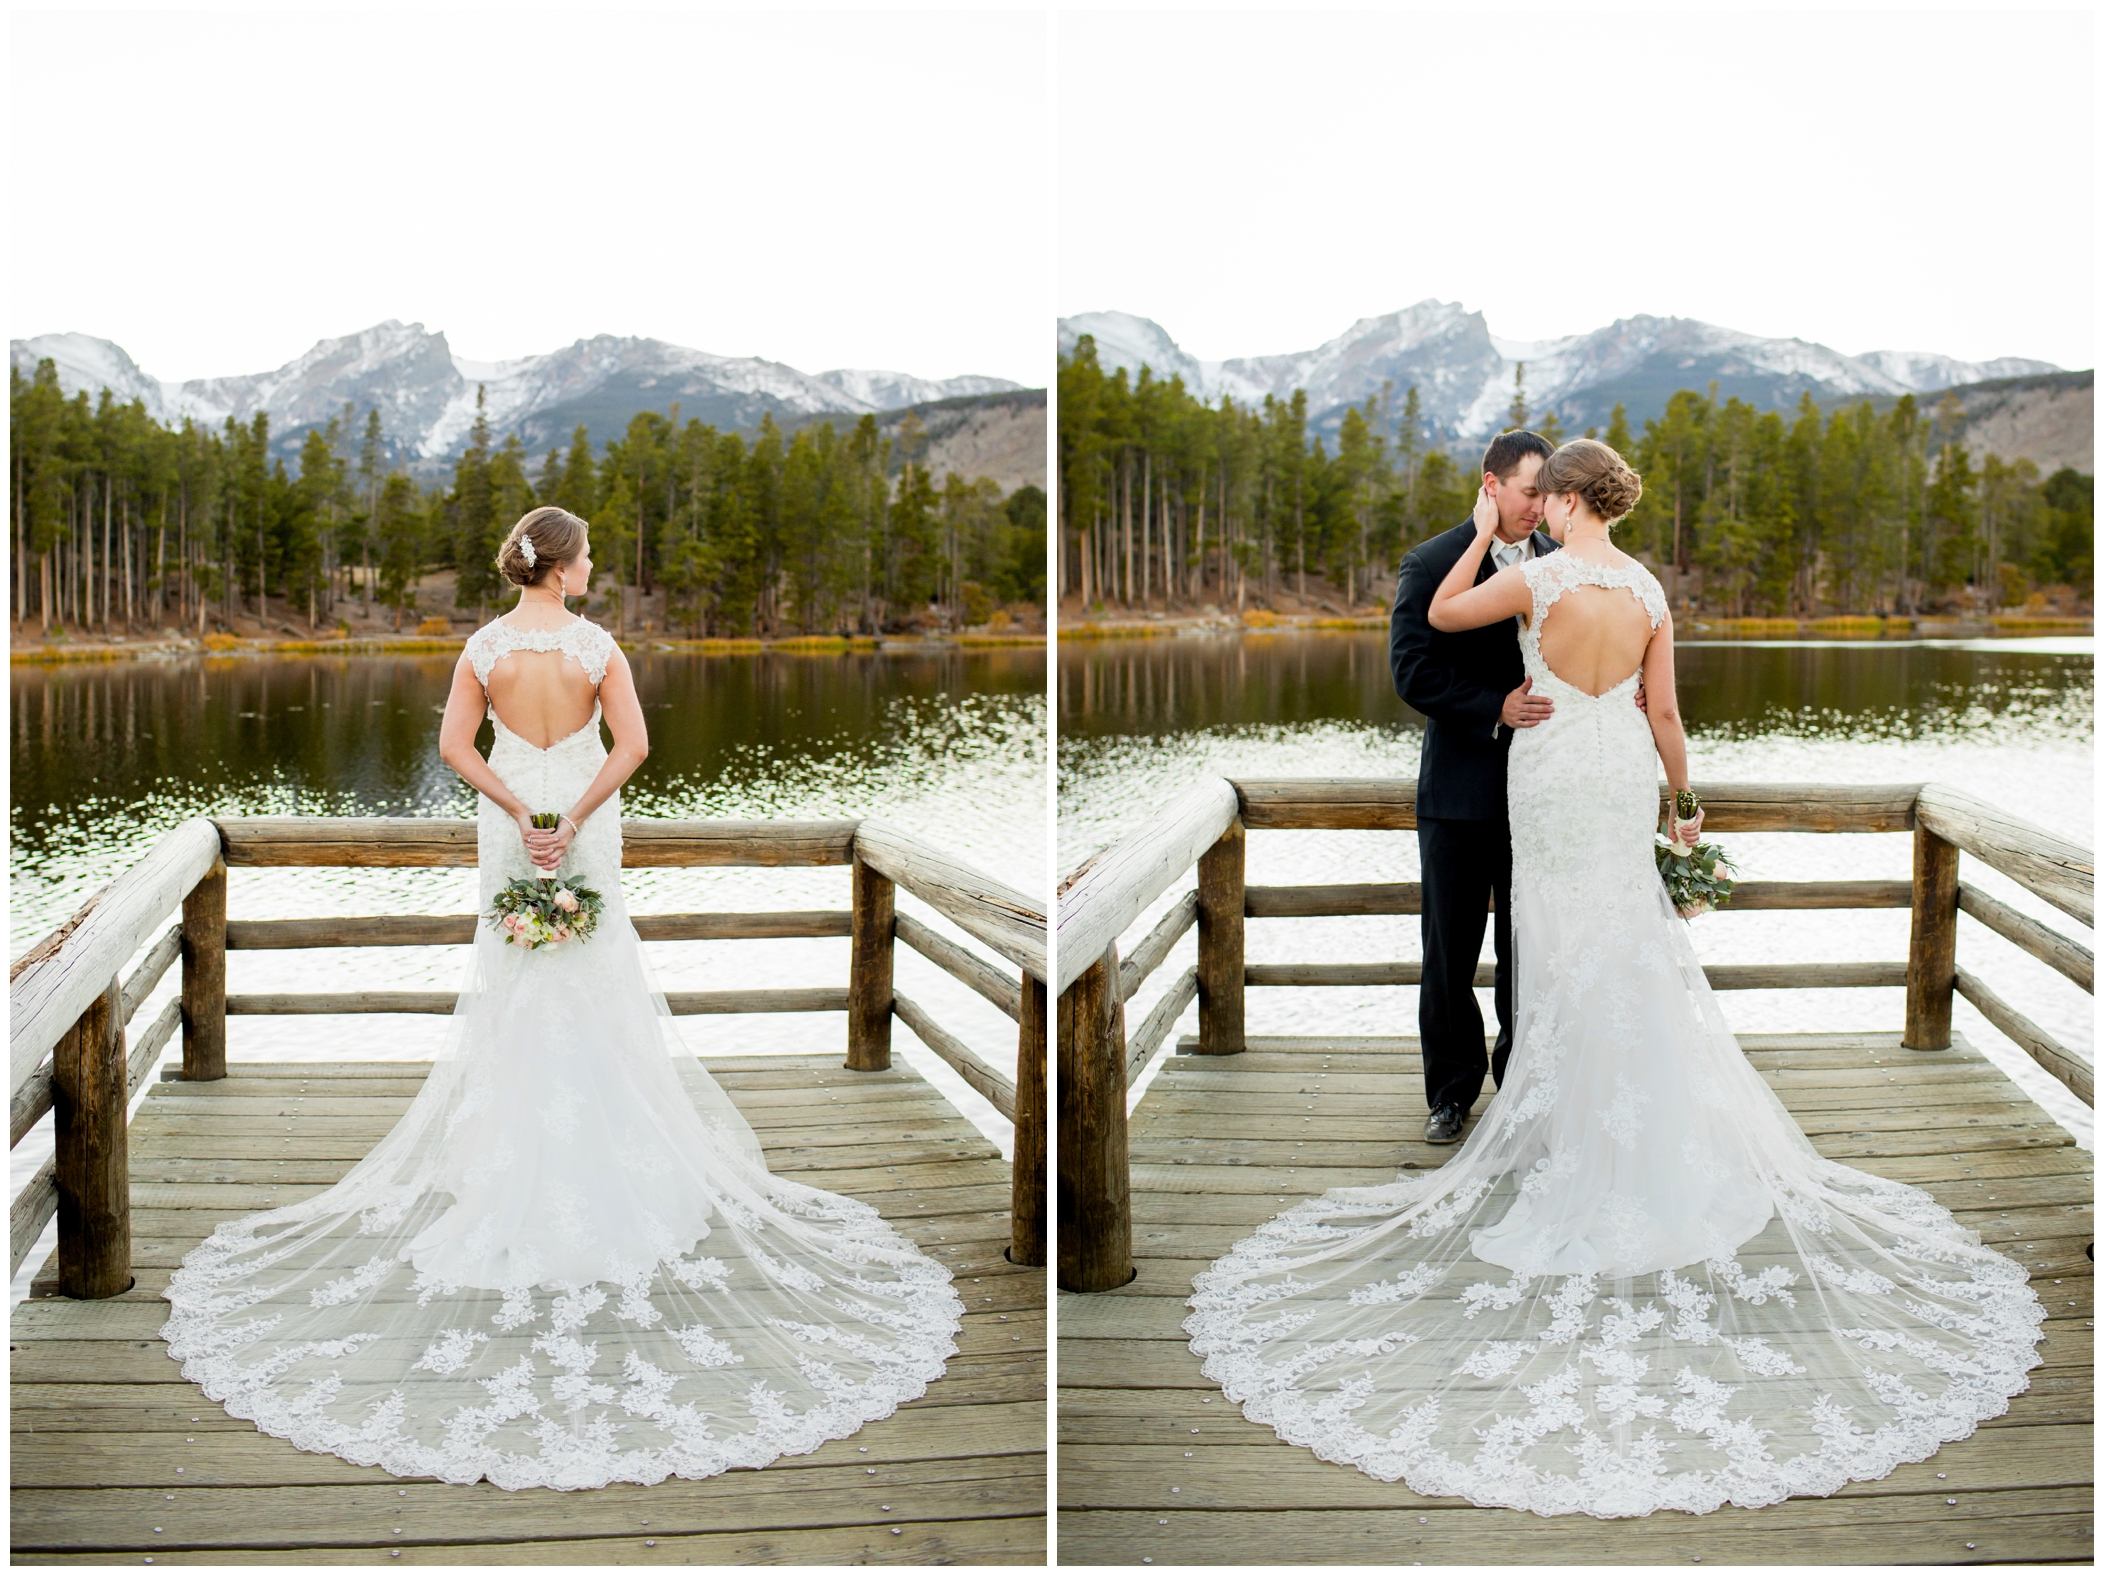 Colorado mountain wedding photos at Sprague Lake